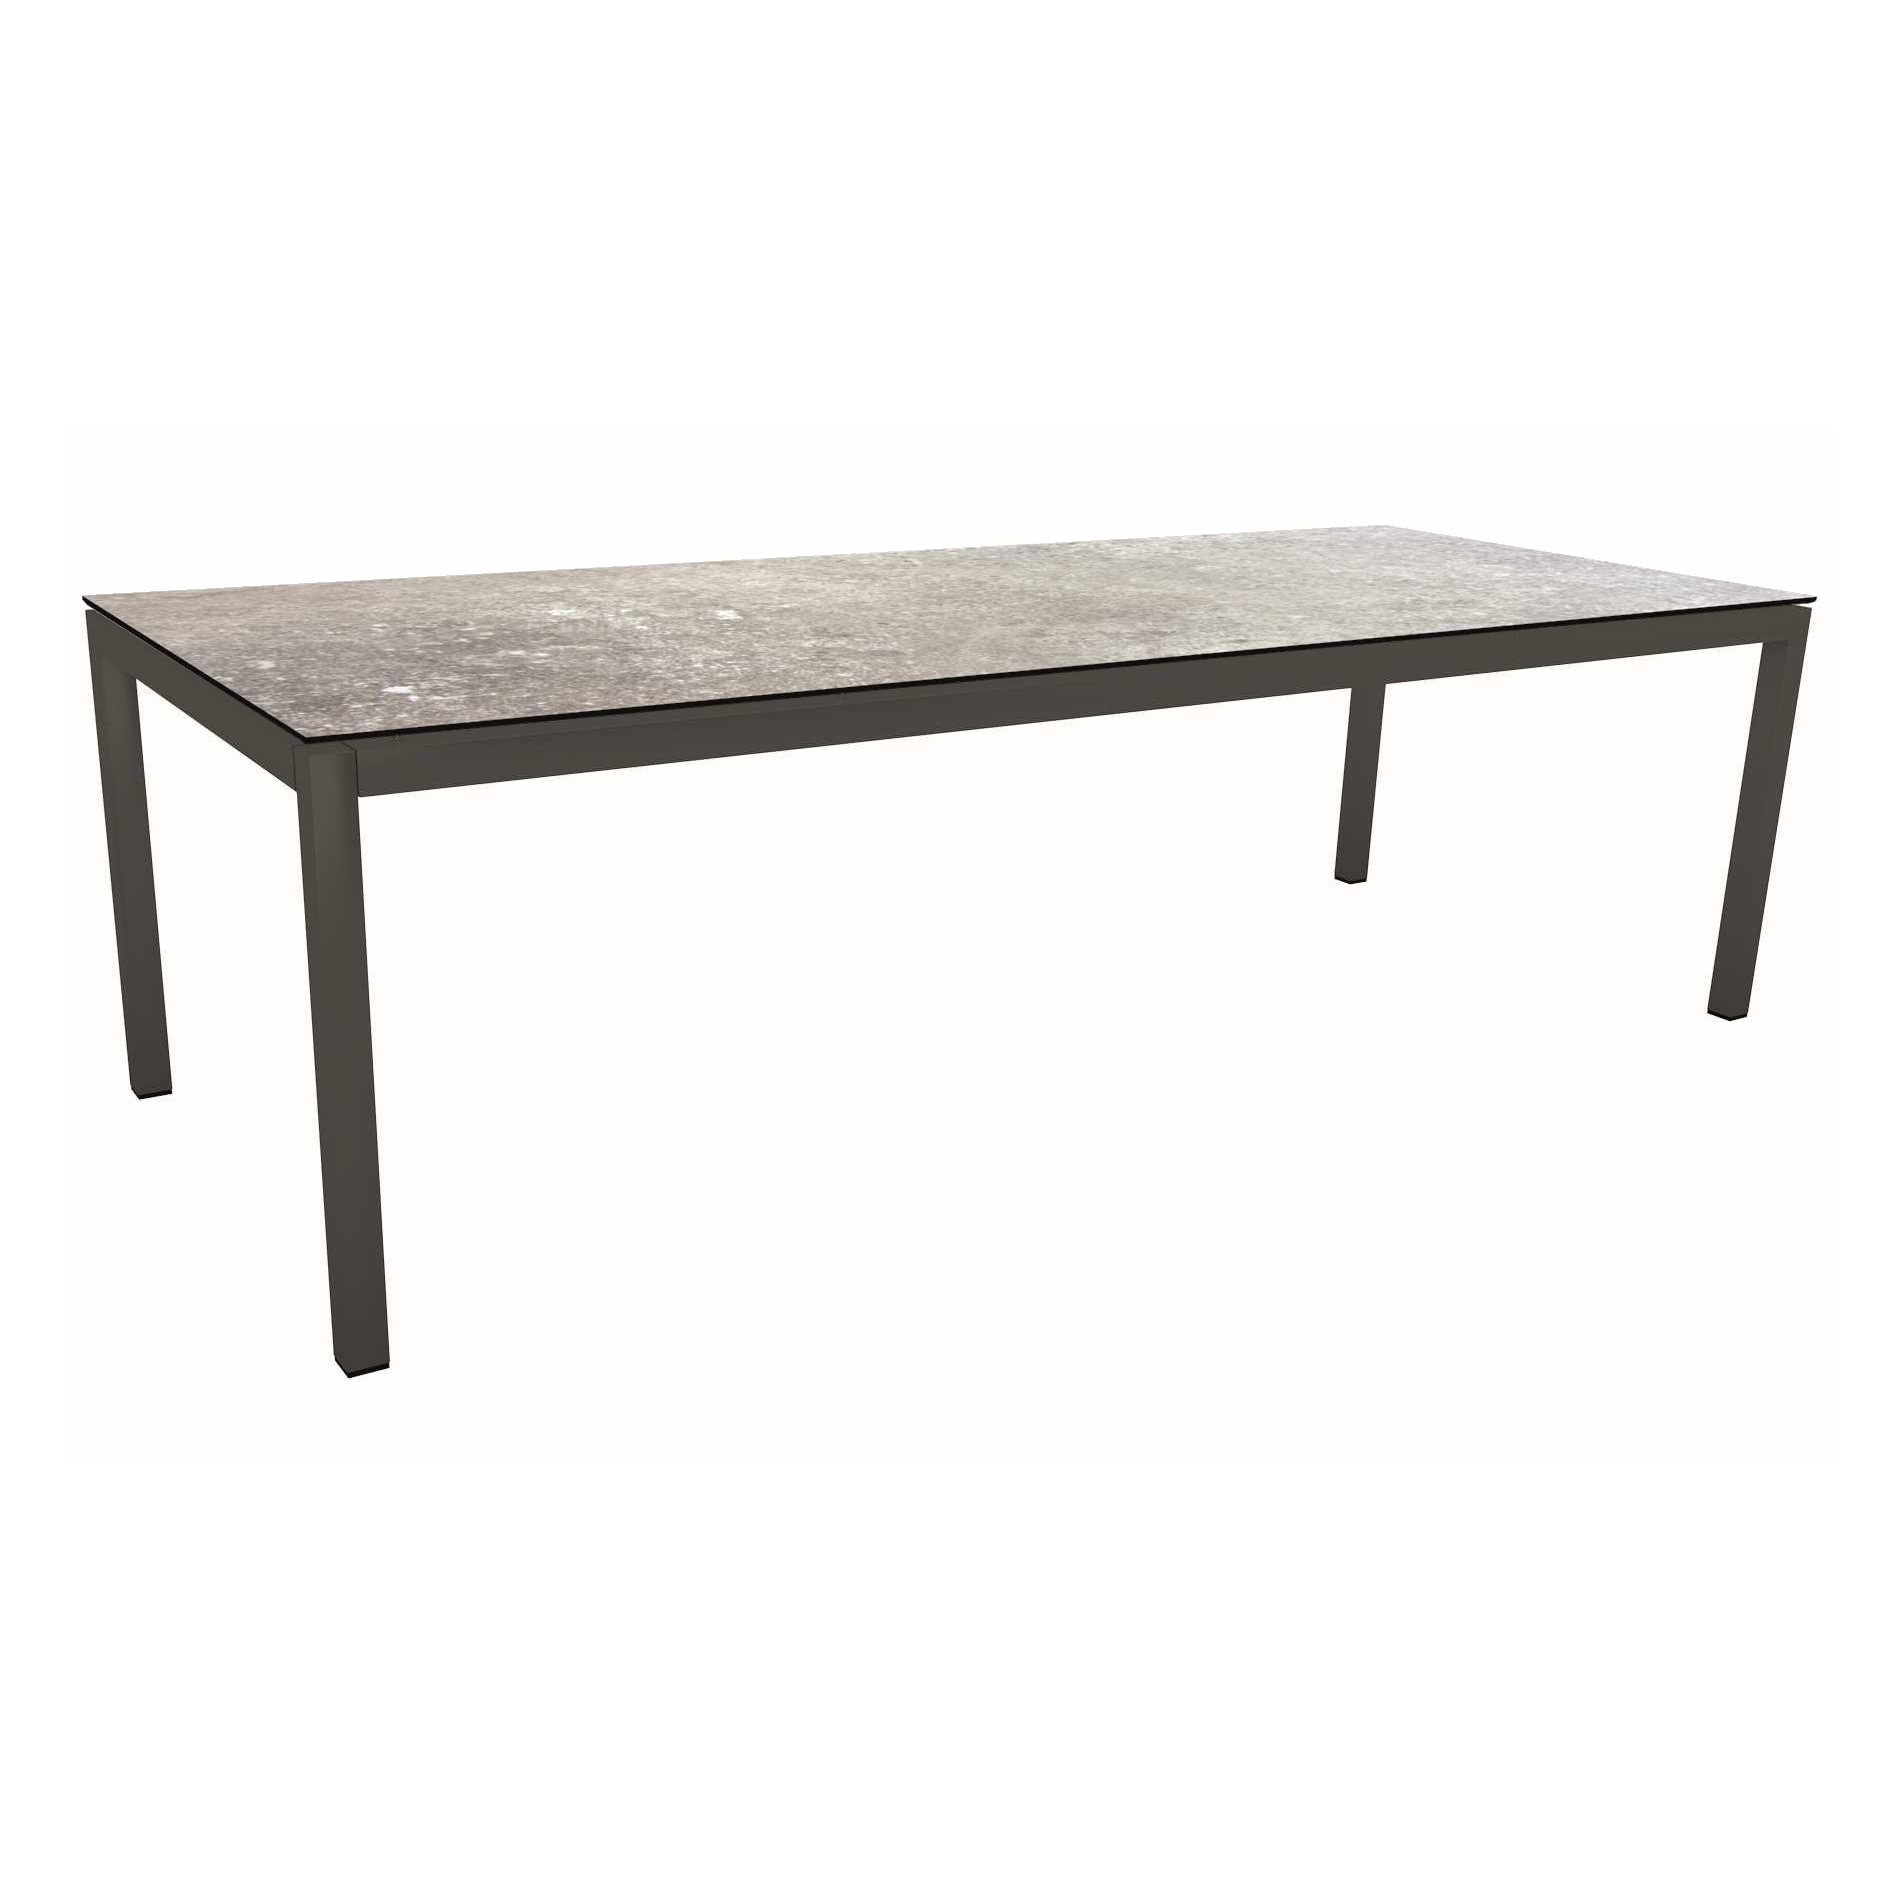 Stern Tischsystem Gartentisch, Gestell Aluminium anthrazit, Tischplatte HPL Vintage stone, Maße: 250x100 cm